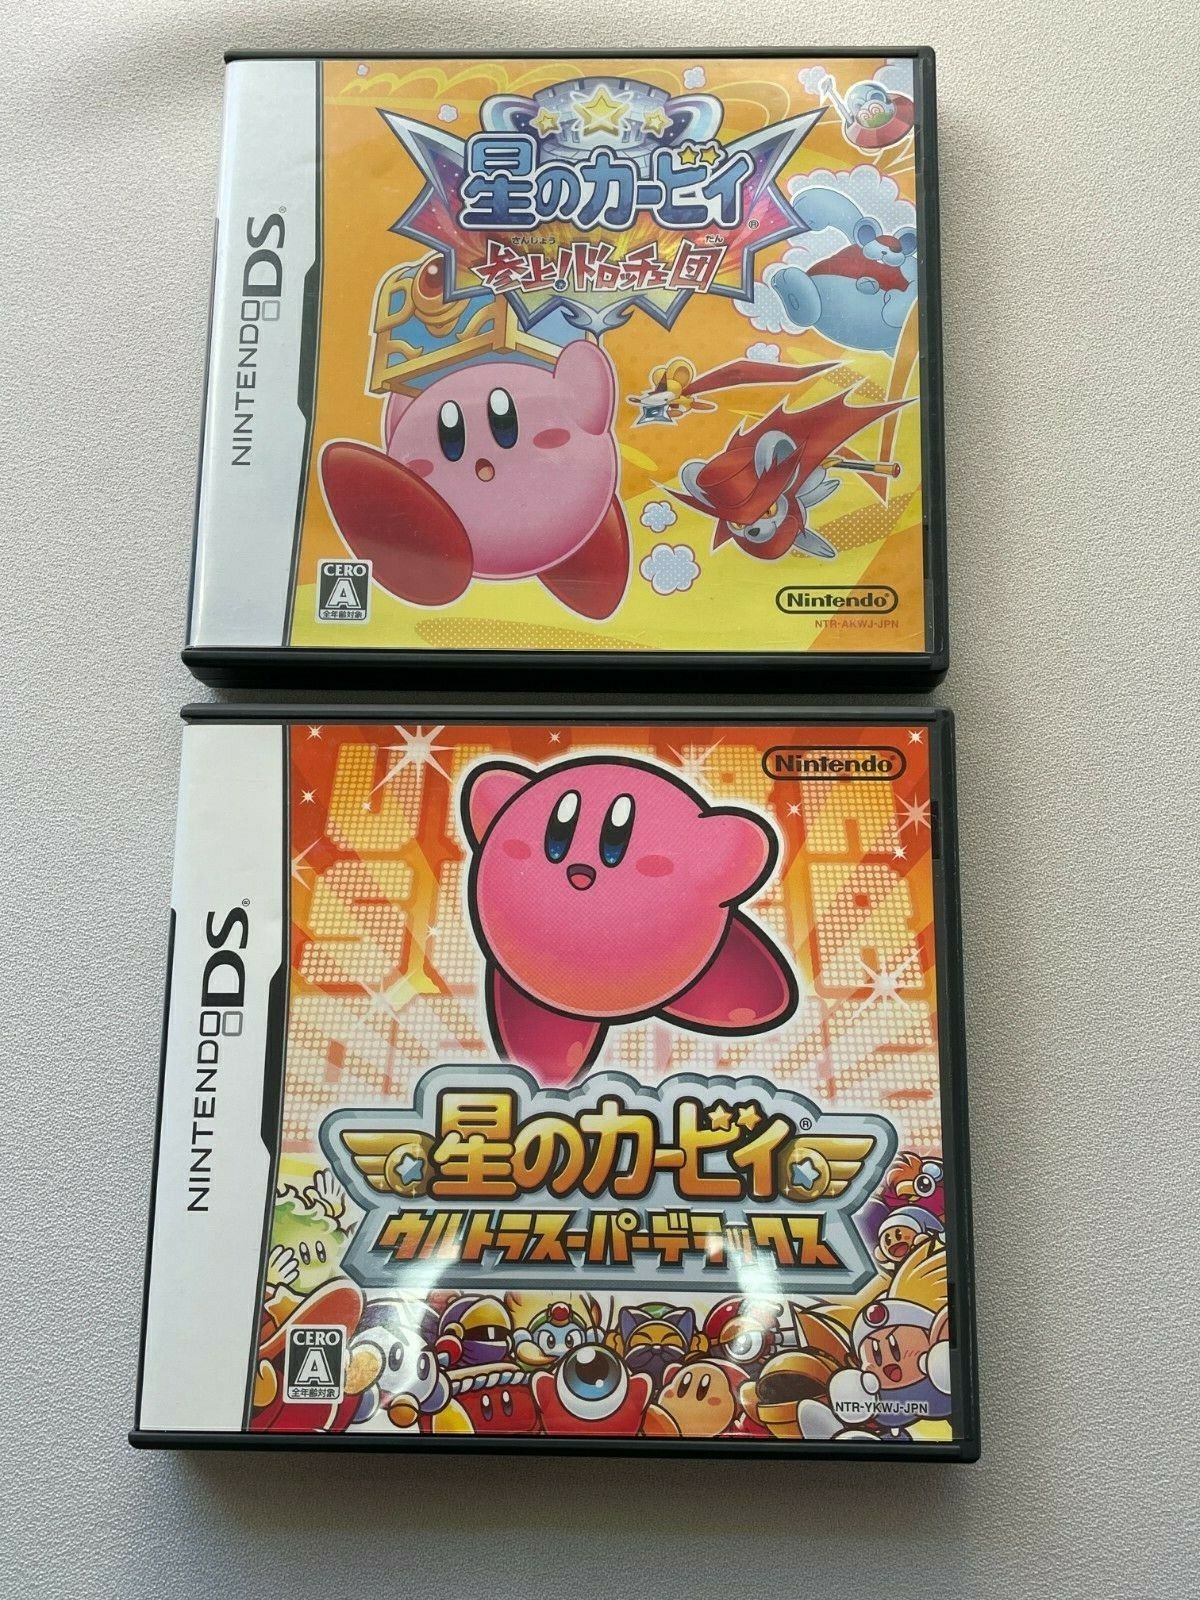 Cantidad de dinero . tonto Nintendo DS Kirby Squeak Squad y Kirby Super Star Ultra importación JAPÓN  NTSC-J 4902370517224 | eBay